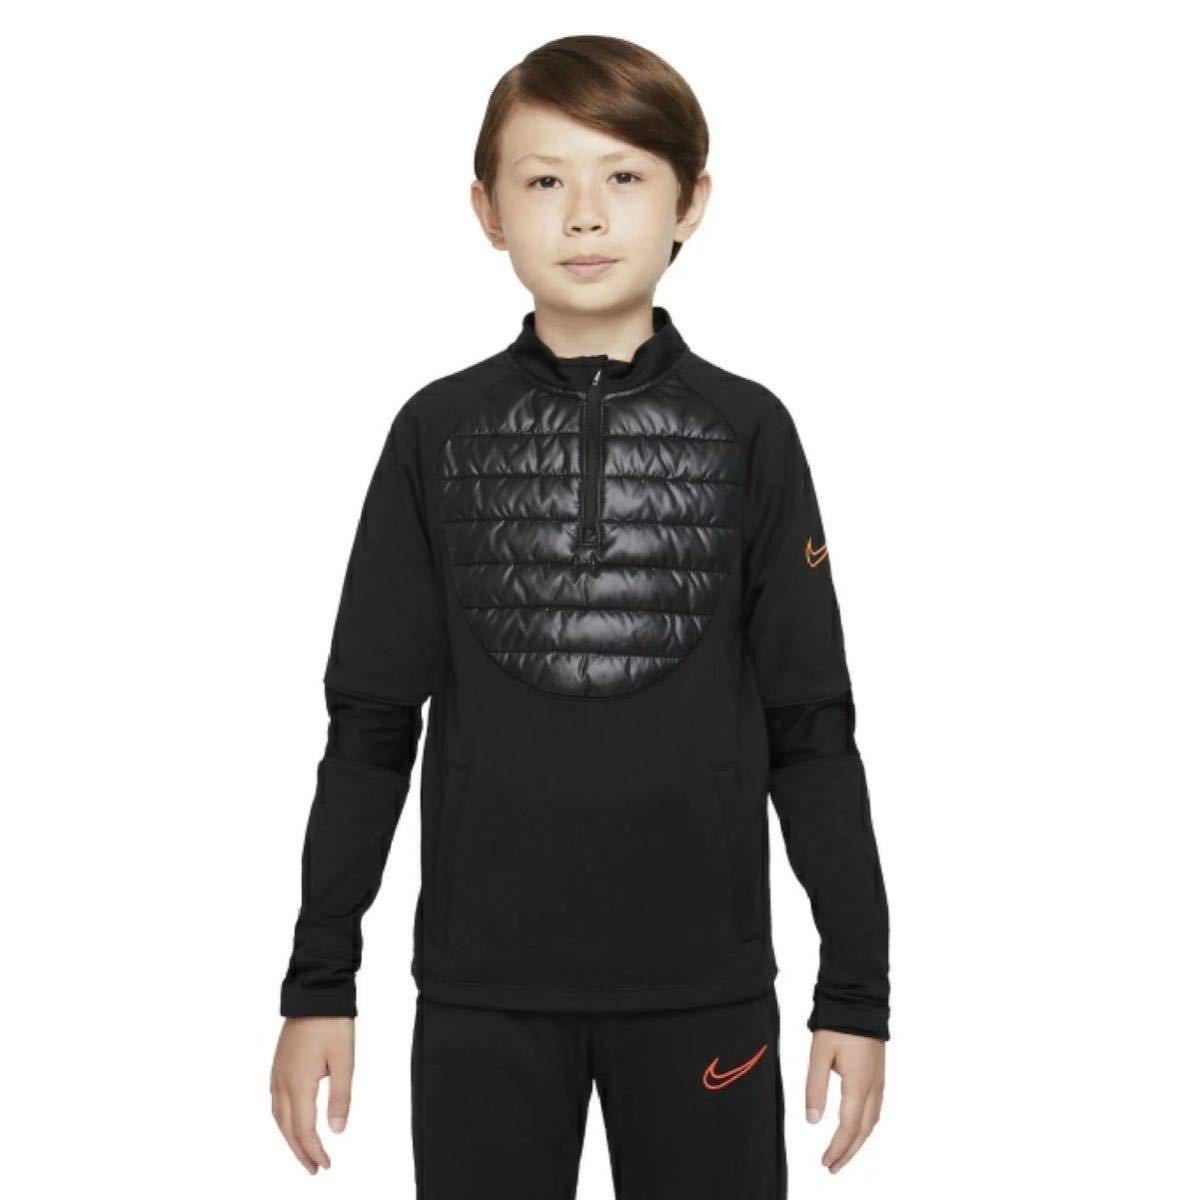  новый товар обычная цена 7150 иен 140.NIKE Nike Junior красный temi- длинный рукав дрель верх Kids футбол одежда черный чёрный pi стерео 